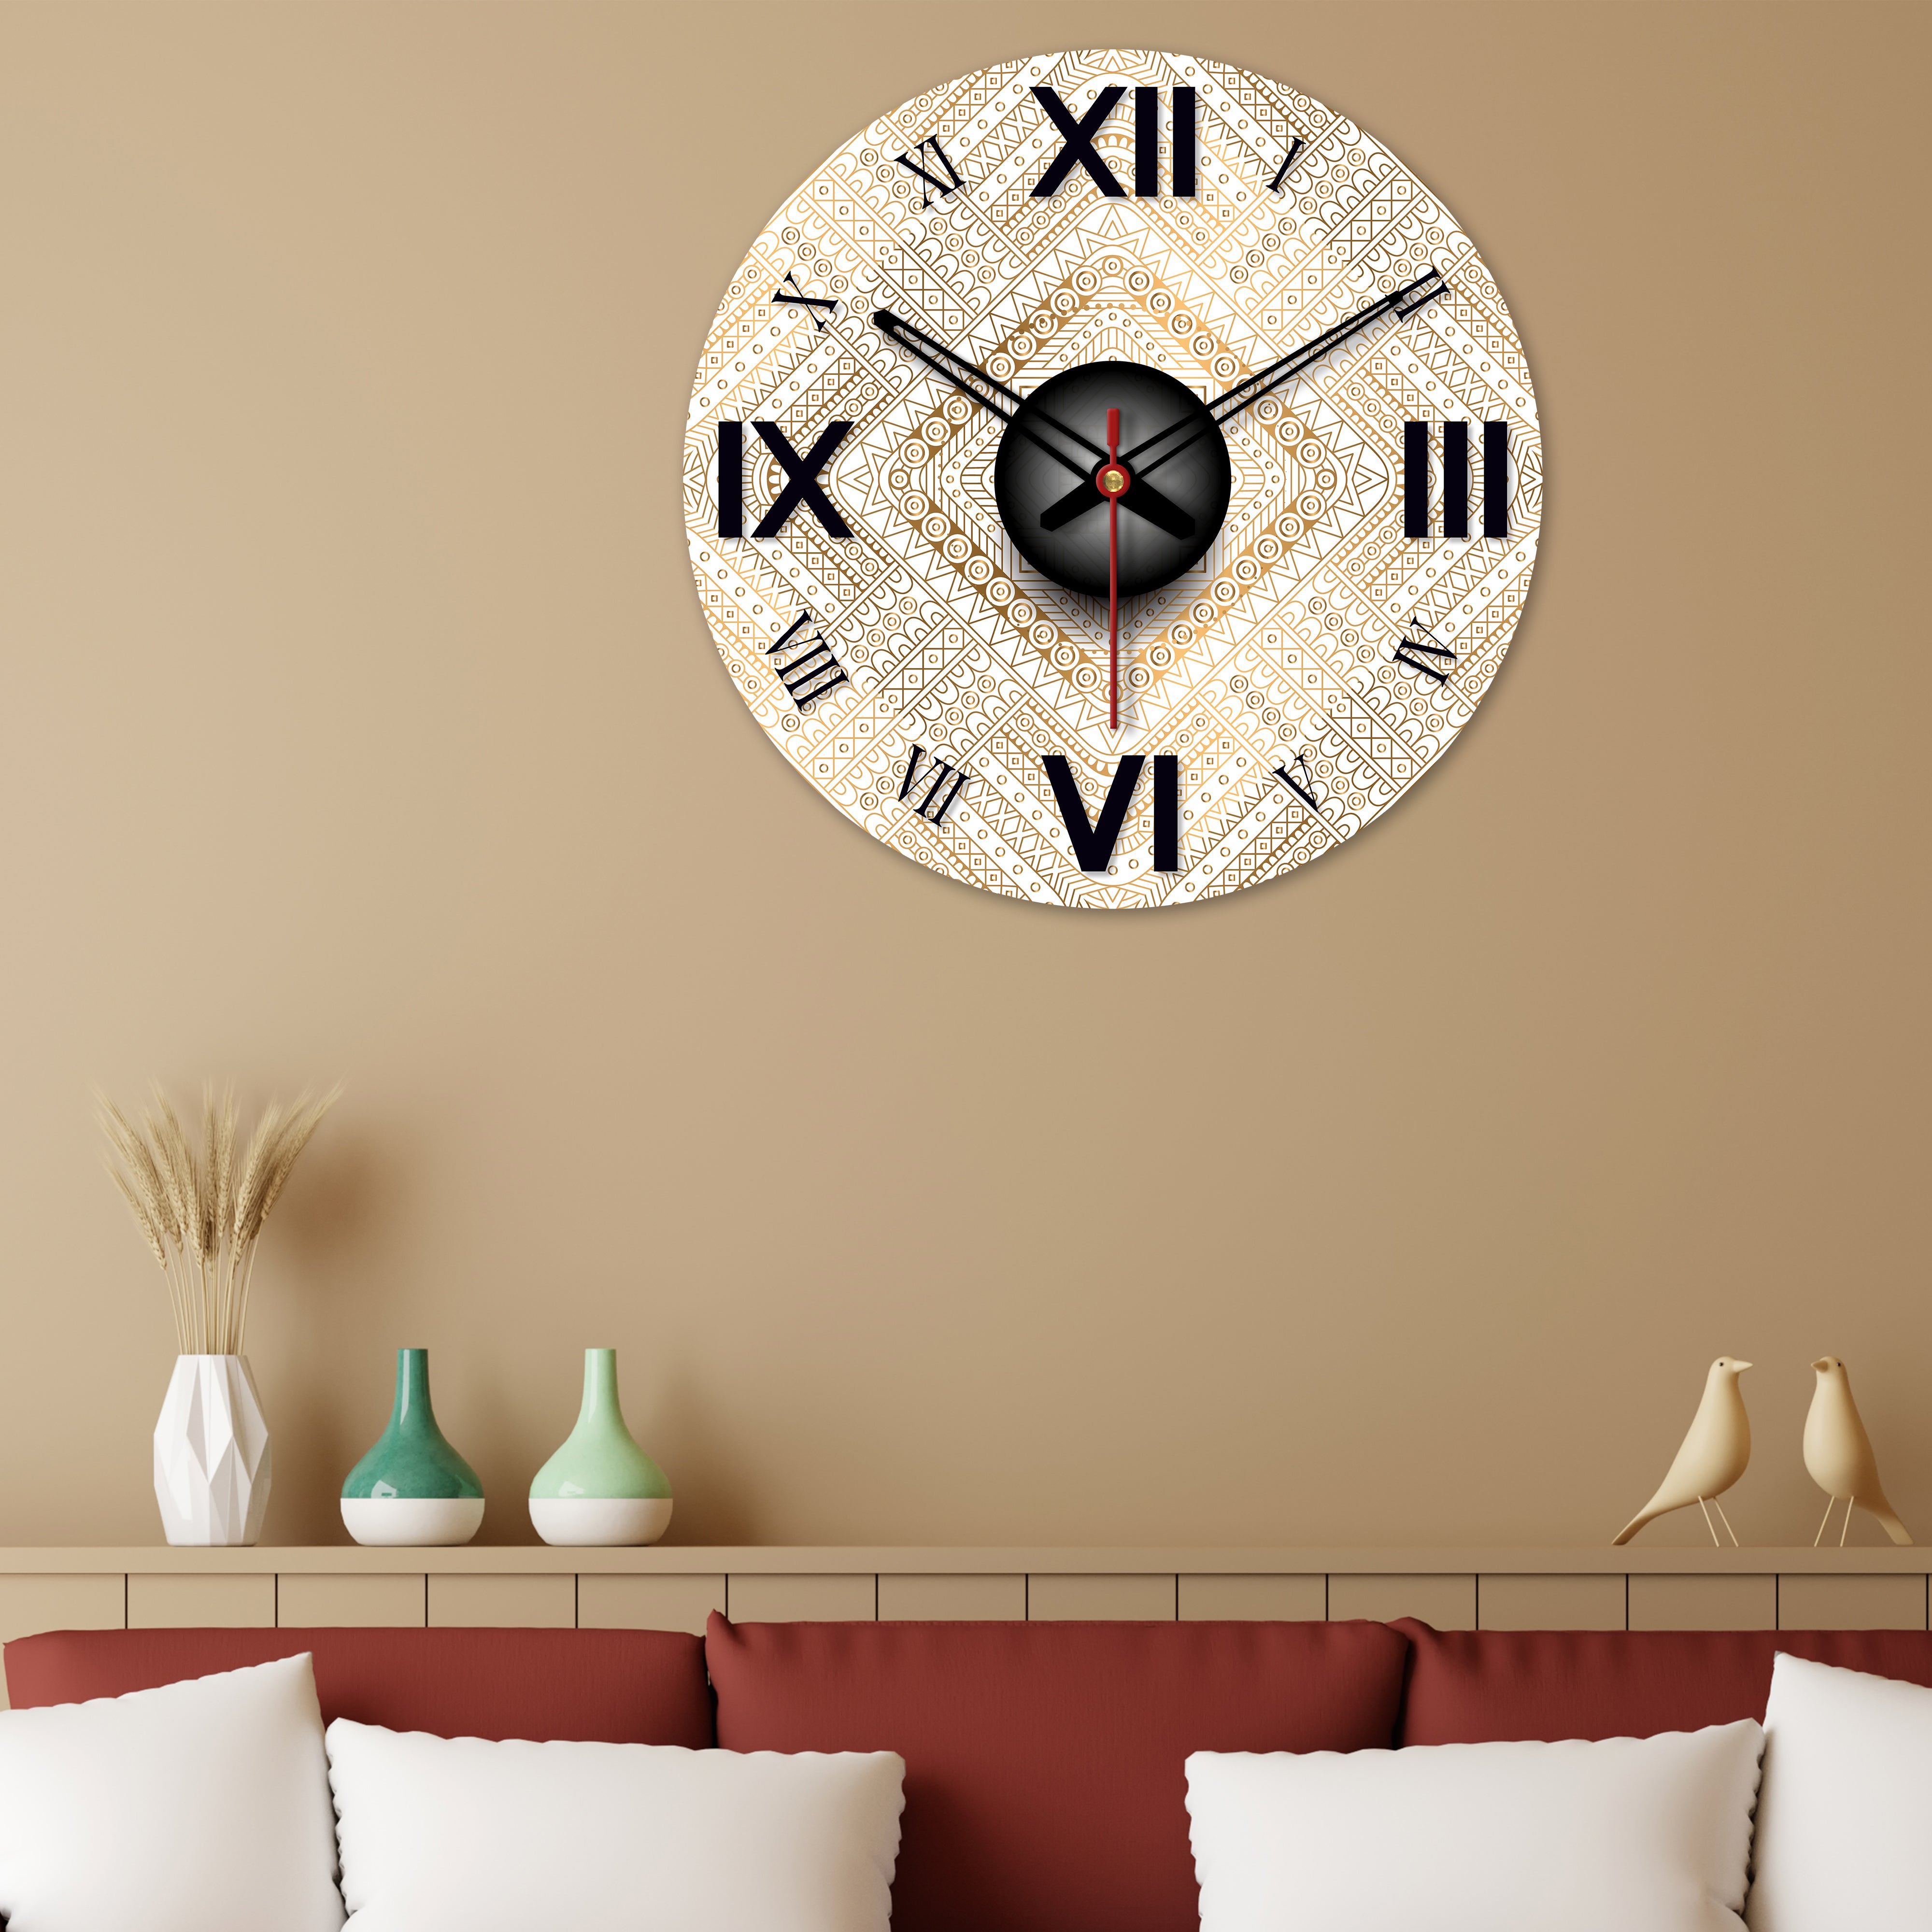 Detailed Golden Pattern Wooden Wall Clock